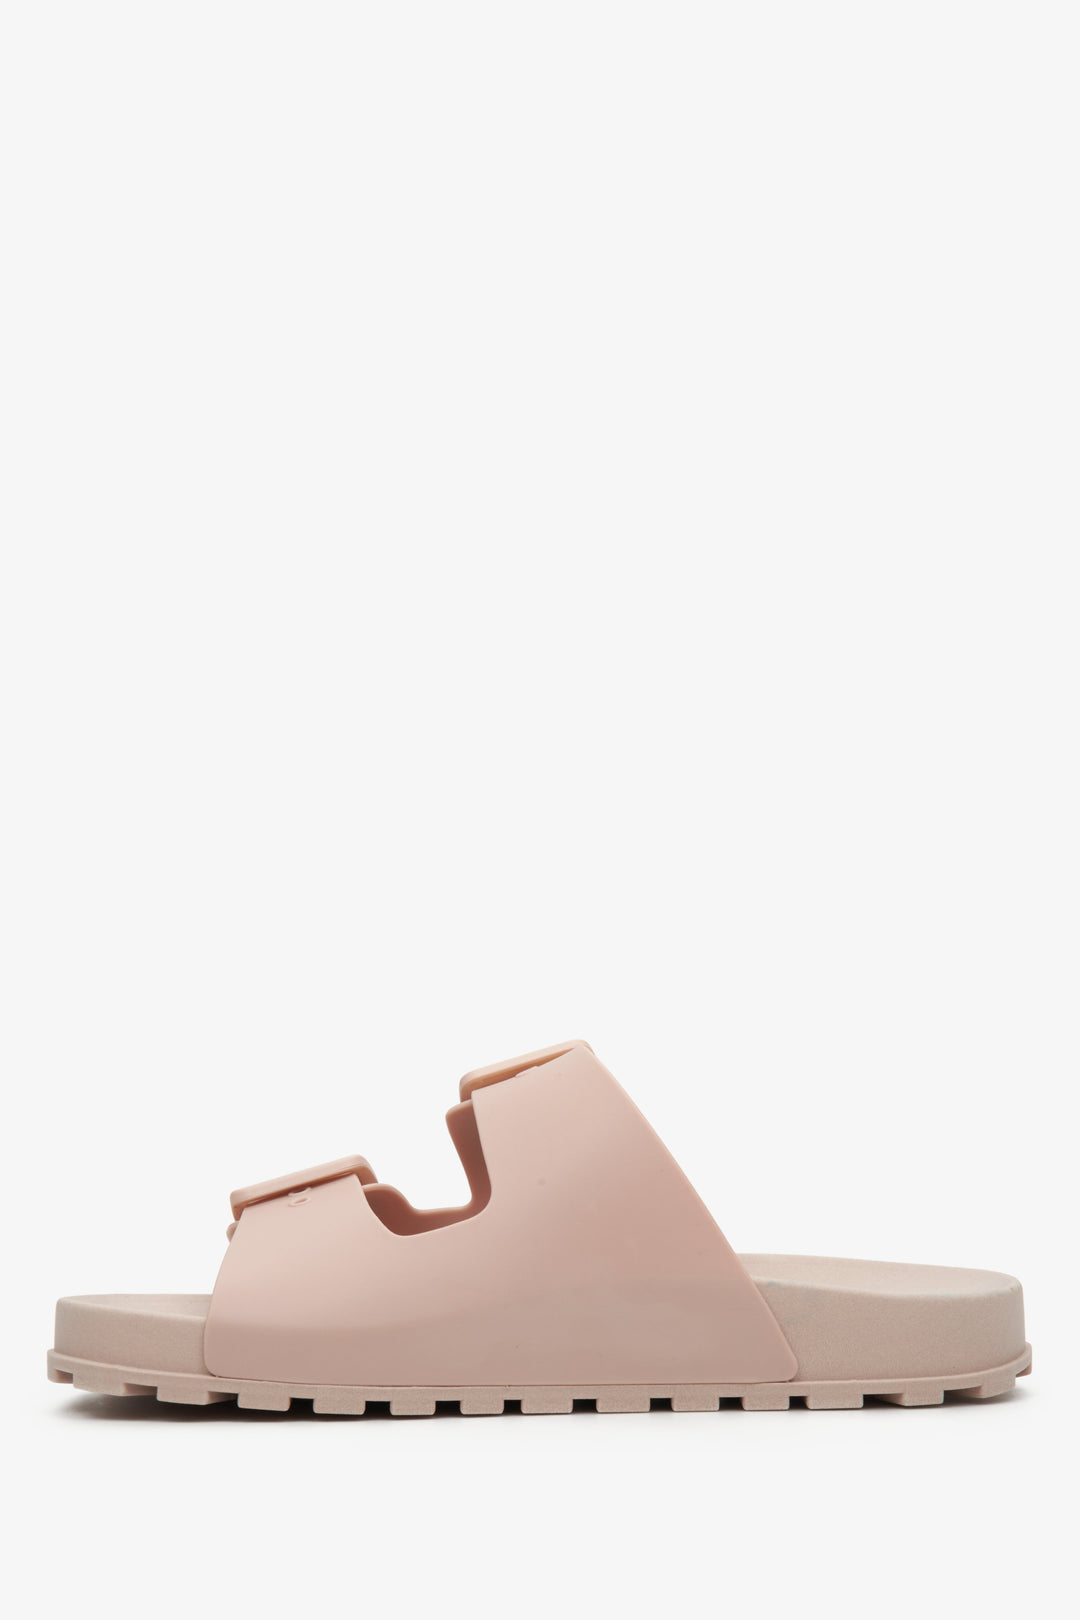 Damskie, gumowe klapki w kolorze jasnoróżowym Estro - profil buta.